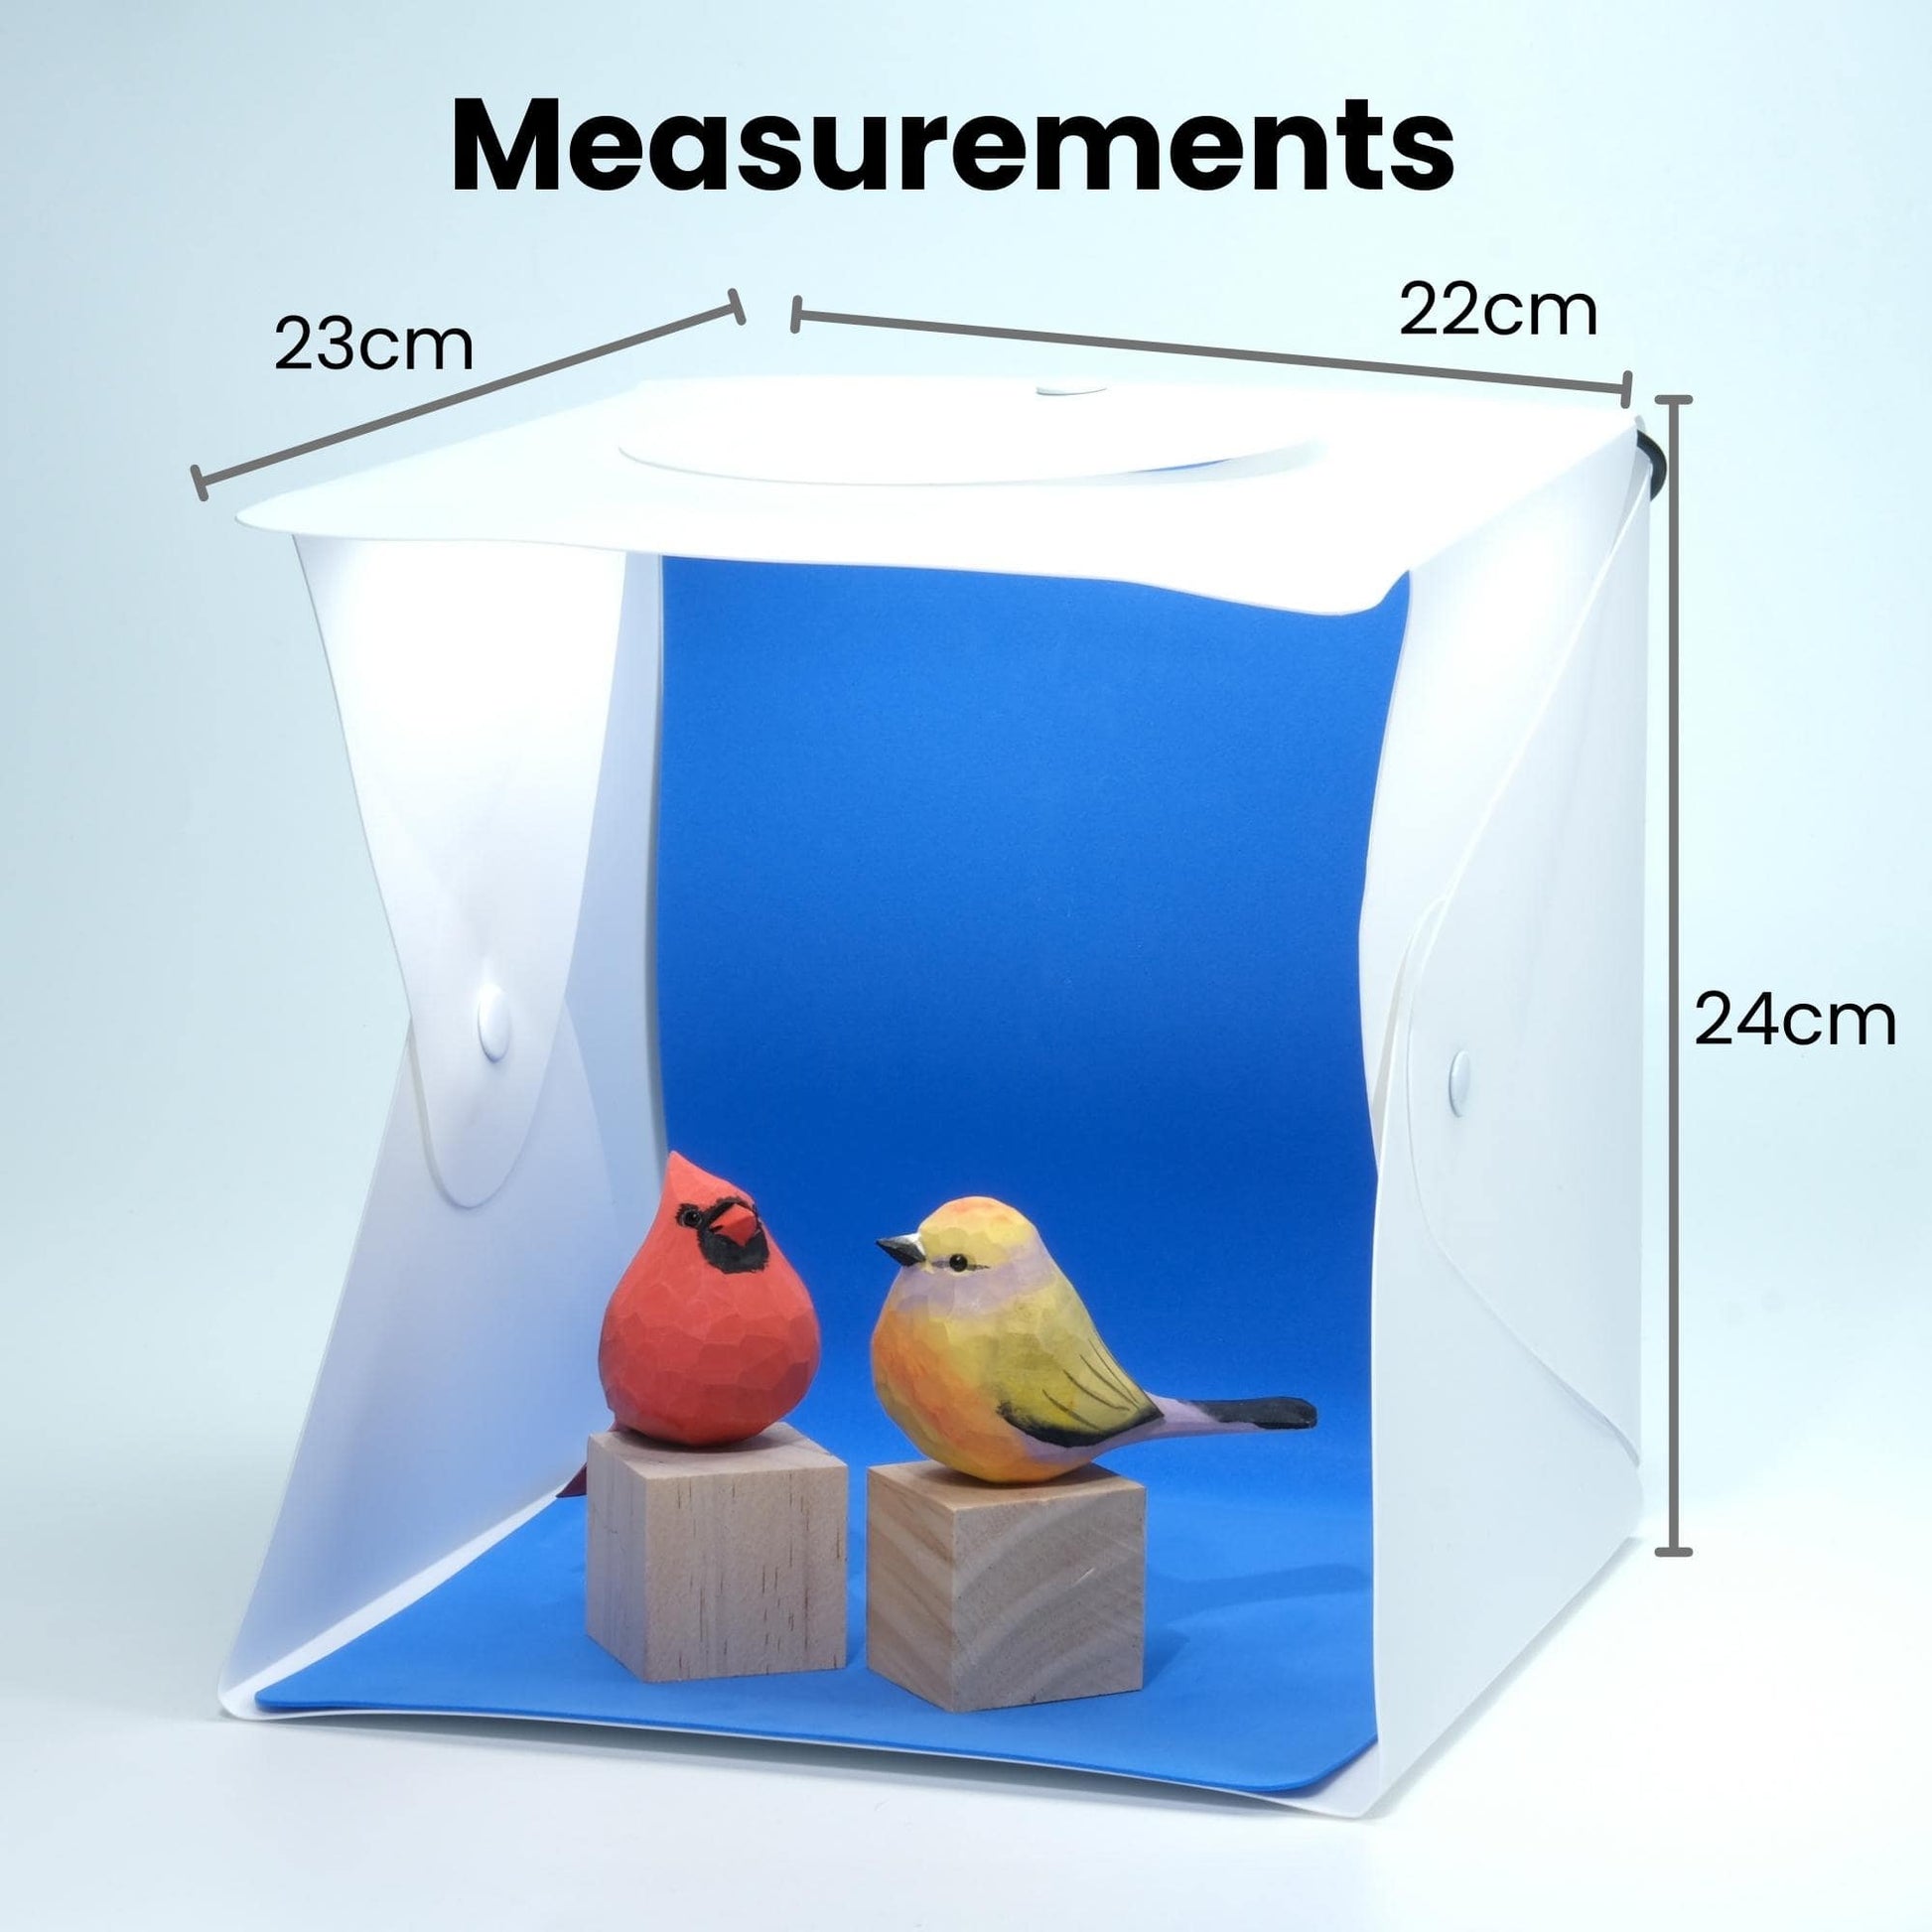 Olivias 20cm Photo Box Studio Bundle Measurements